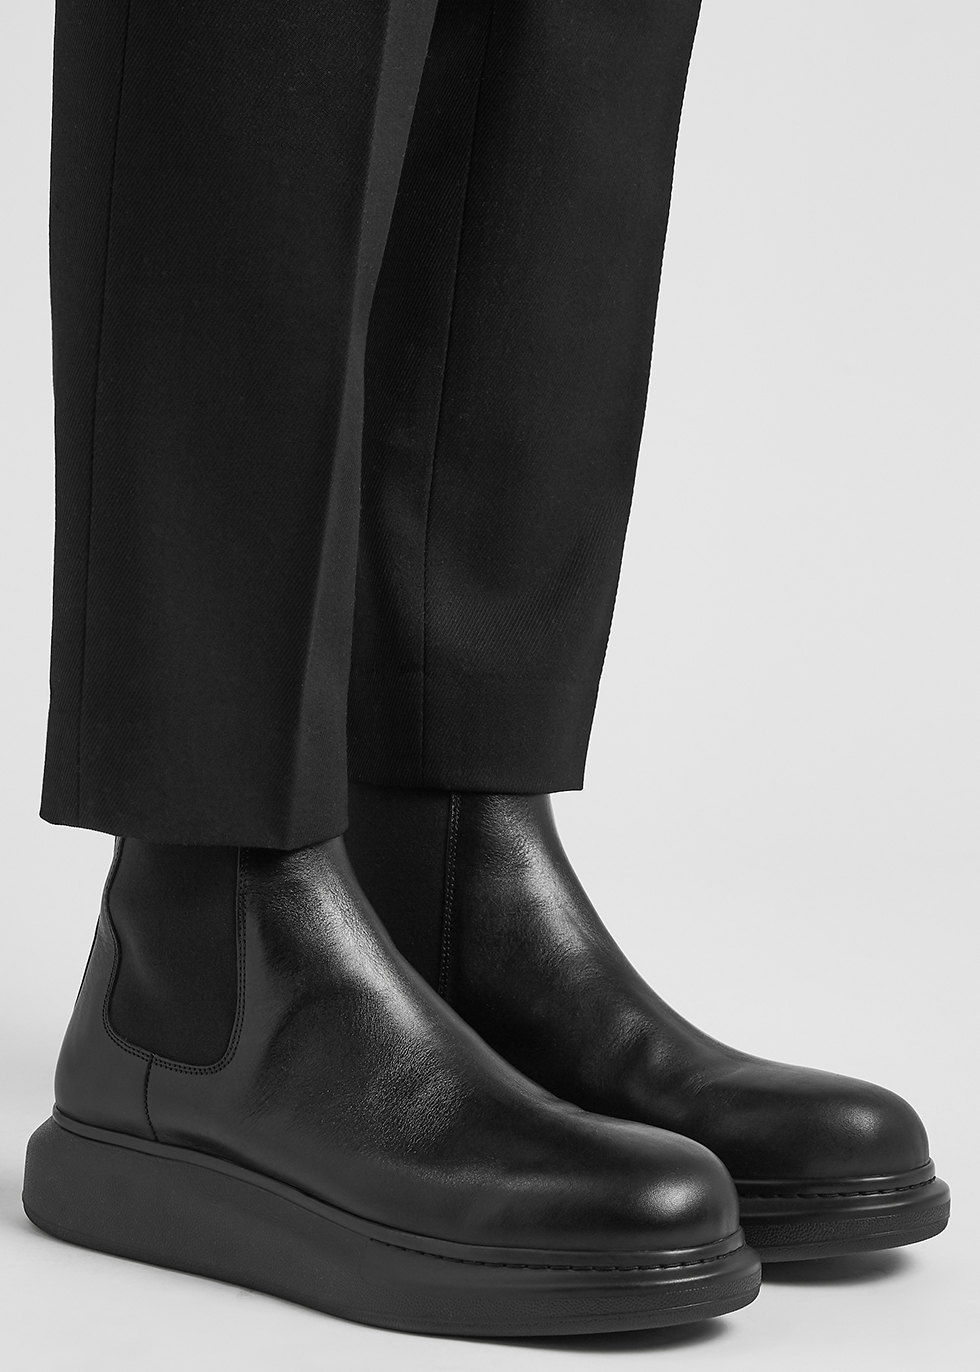 Hybrid black leather Chelsea boots Harvey Nichols Men Shoes Boots Chelsea Boots 